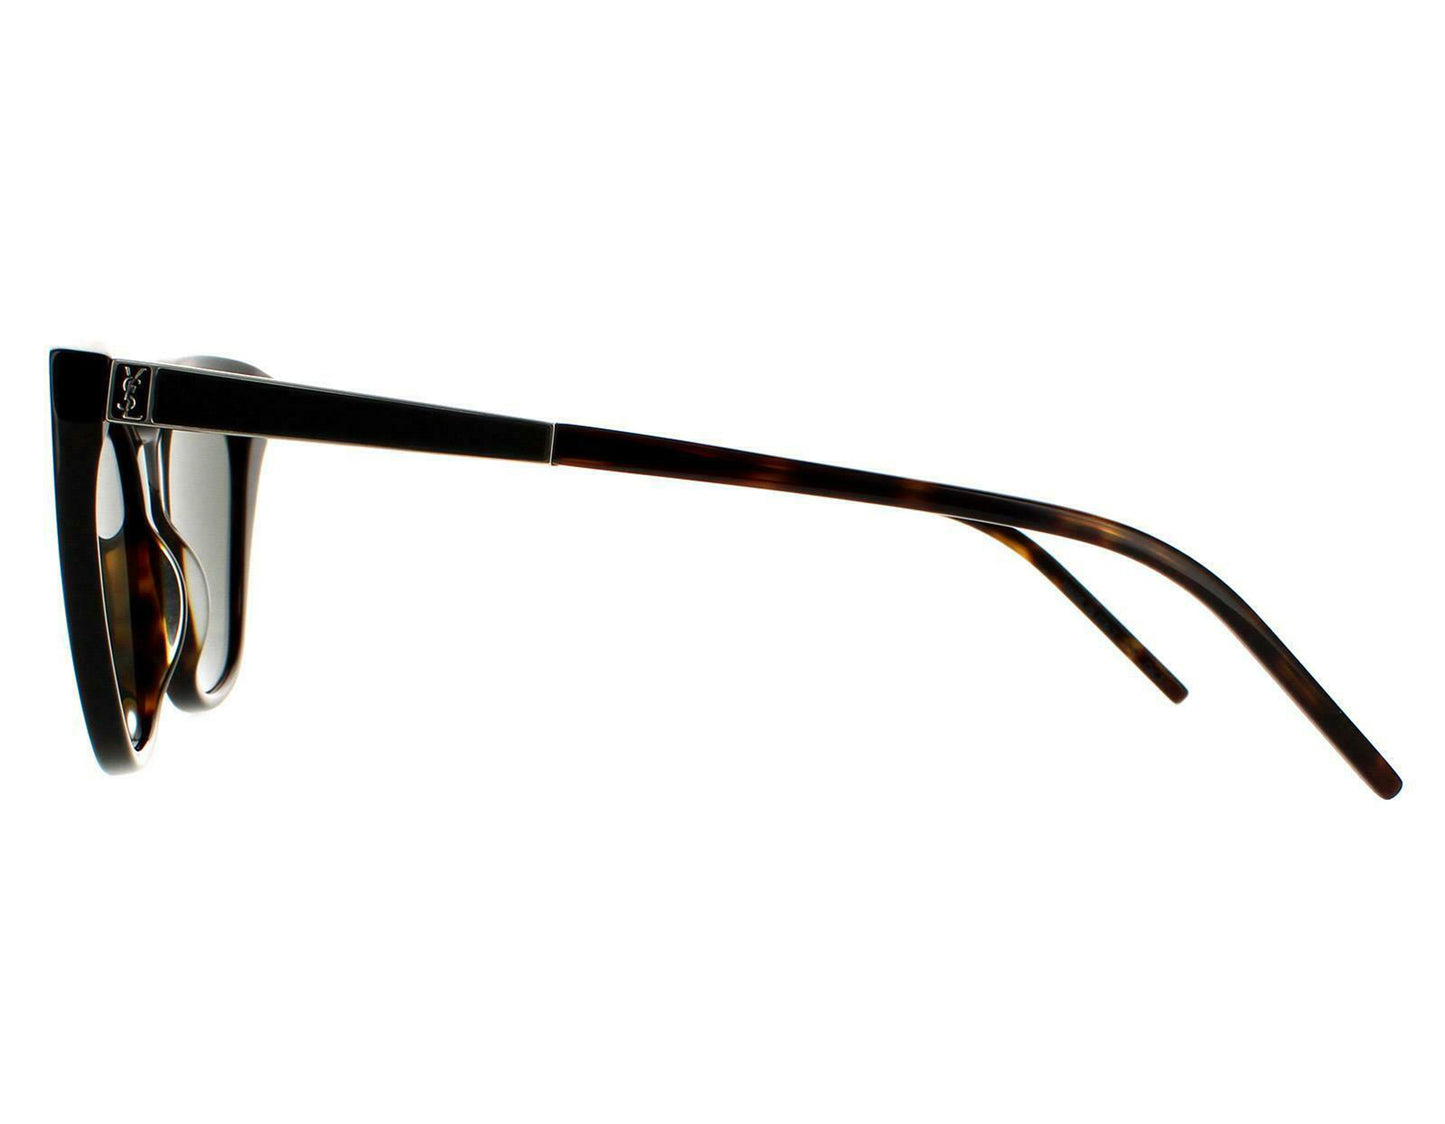 Yves Saint Laurent SLM69-004-56 56mm New Sunglasses